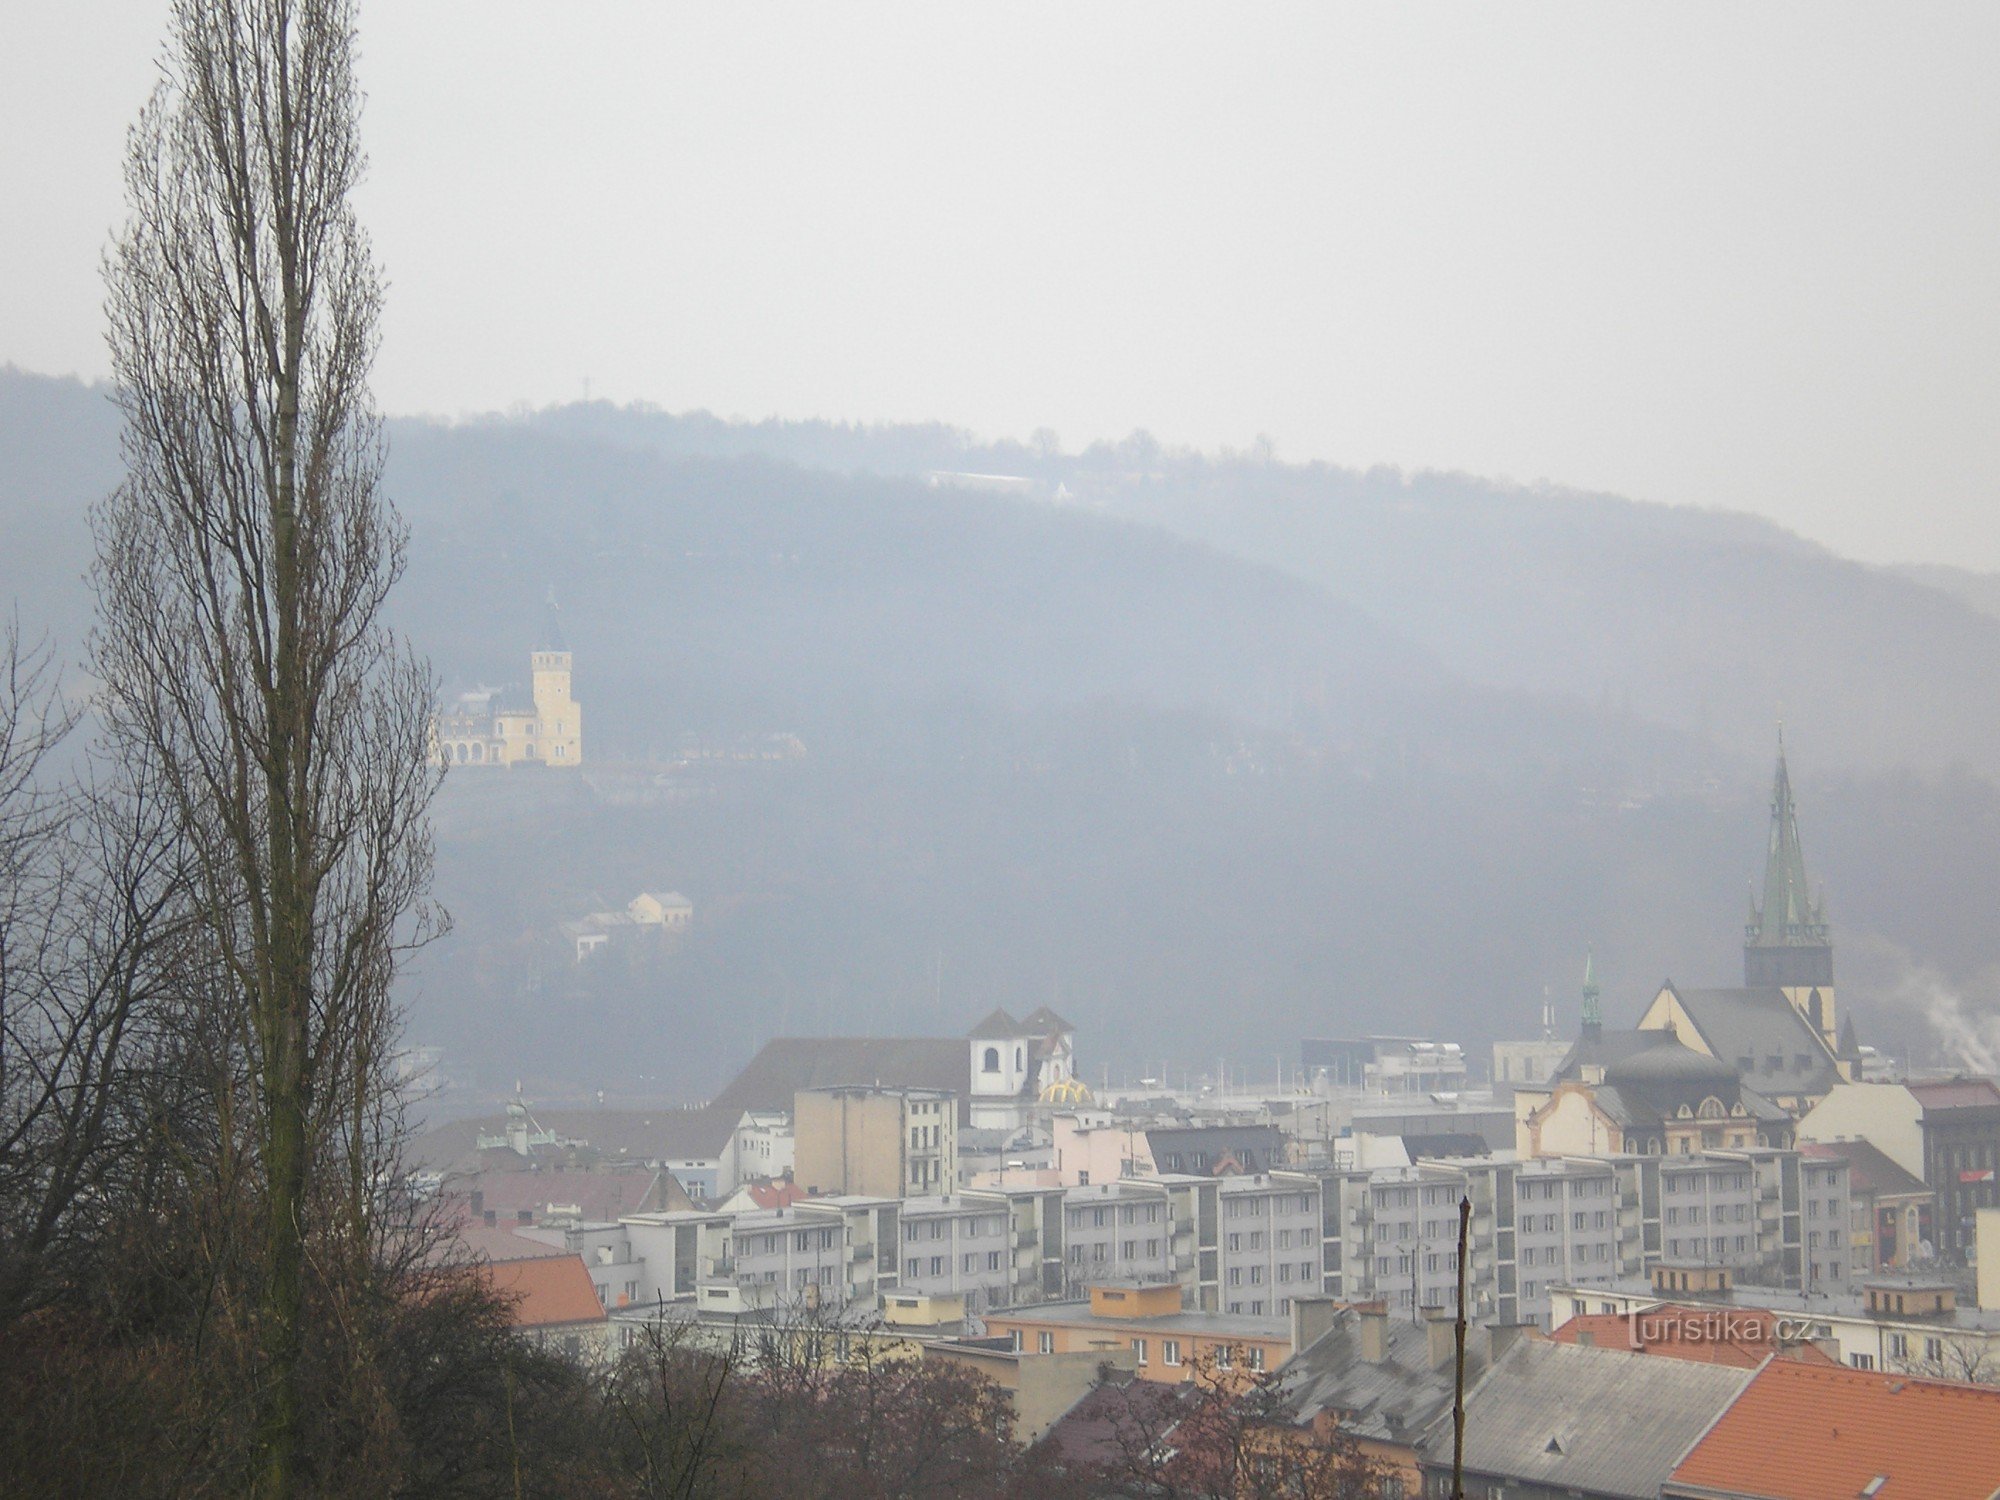 Ústí nad Labem 的视图